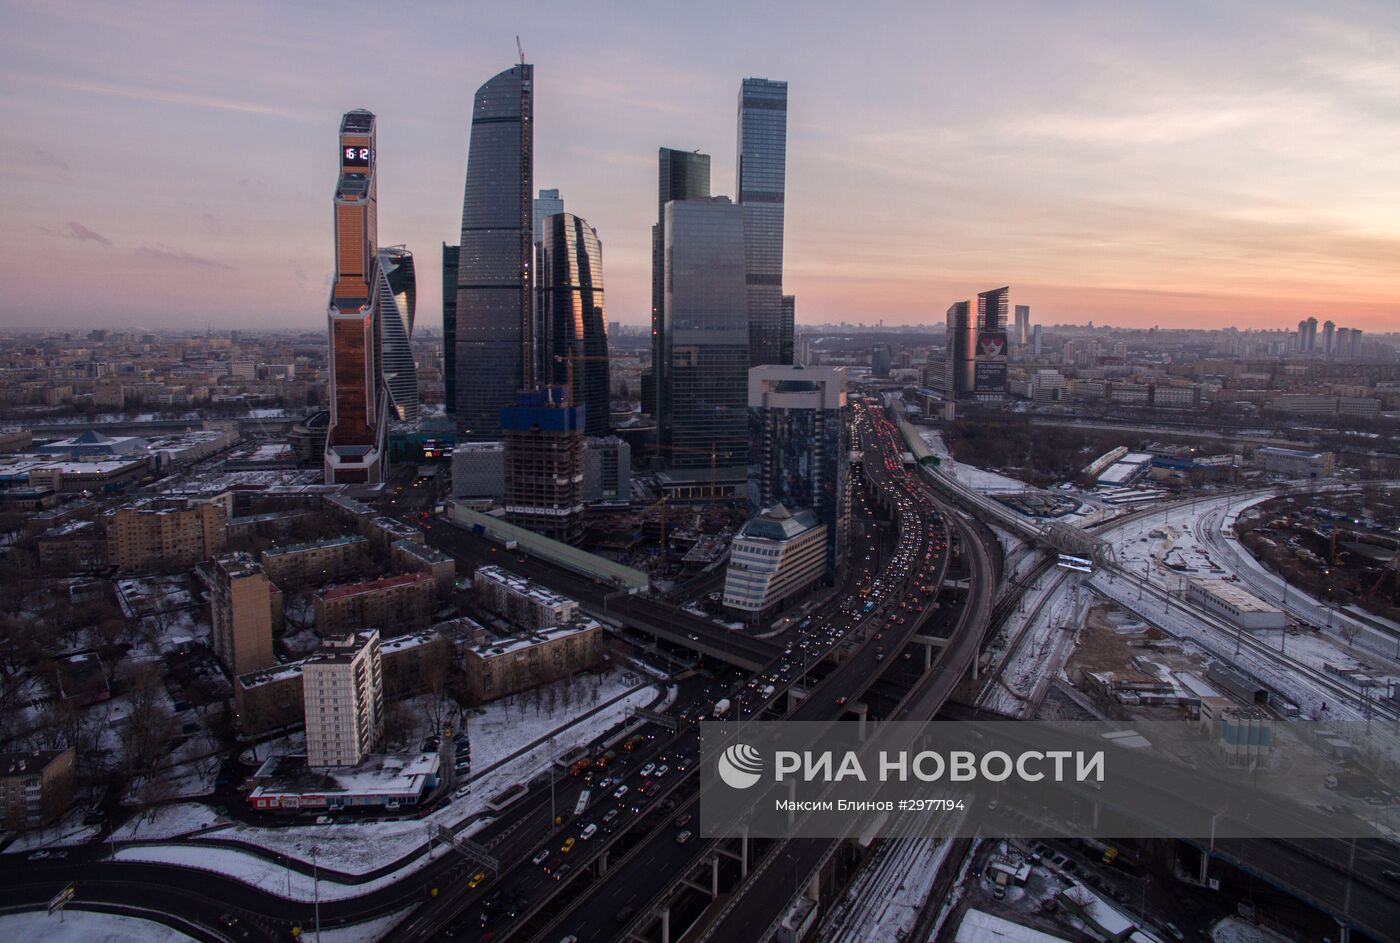 Вид на Московский международный деловой центр "Москва-Сити"